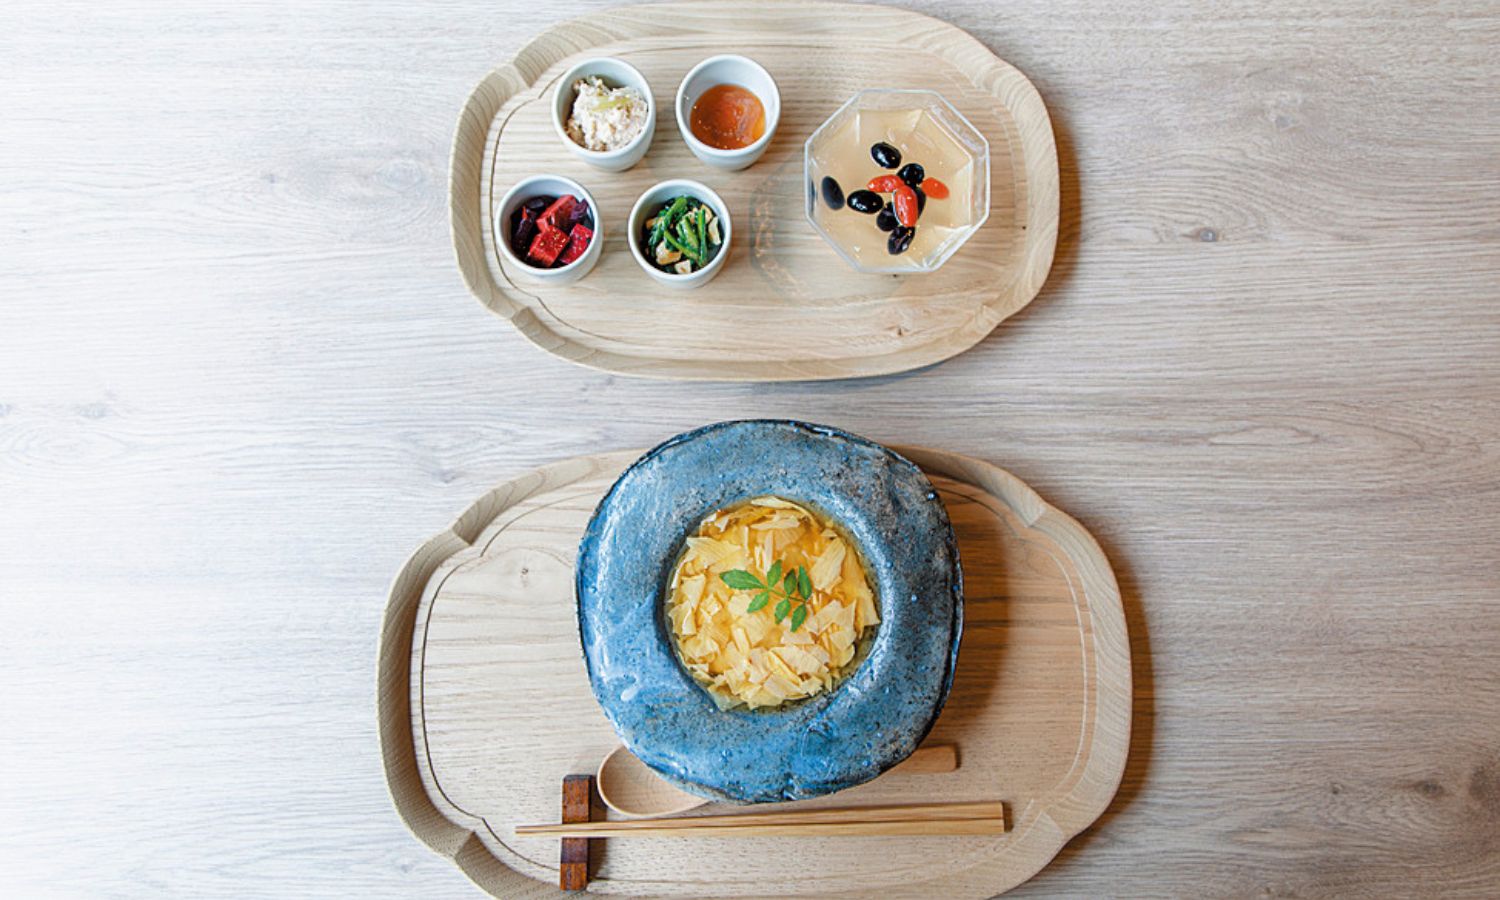 写真は湯葉と柚子のあんをかけたおかゆの養生朝食。陰陽五行になぞらえて、おかゆを含め5色の料理が用意されている。